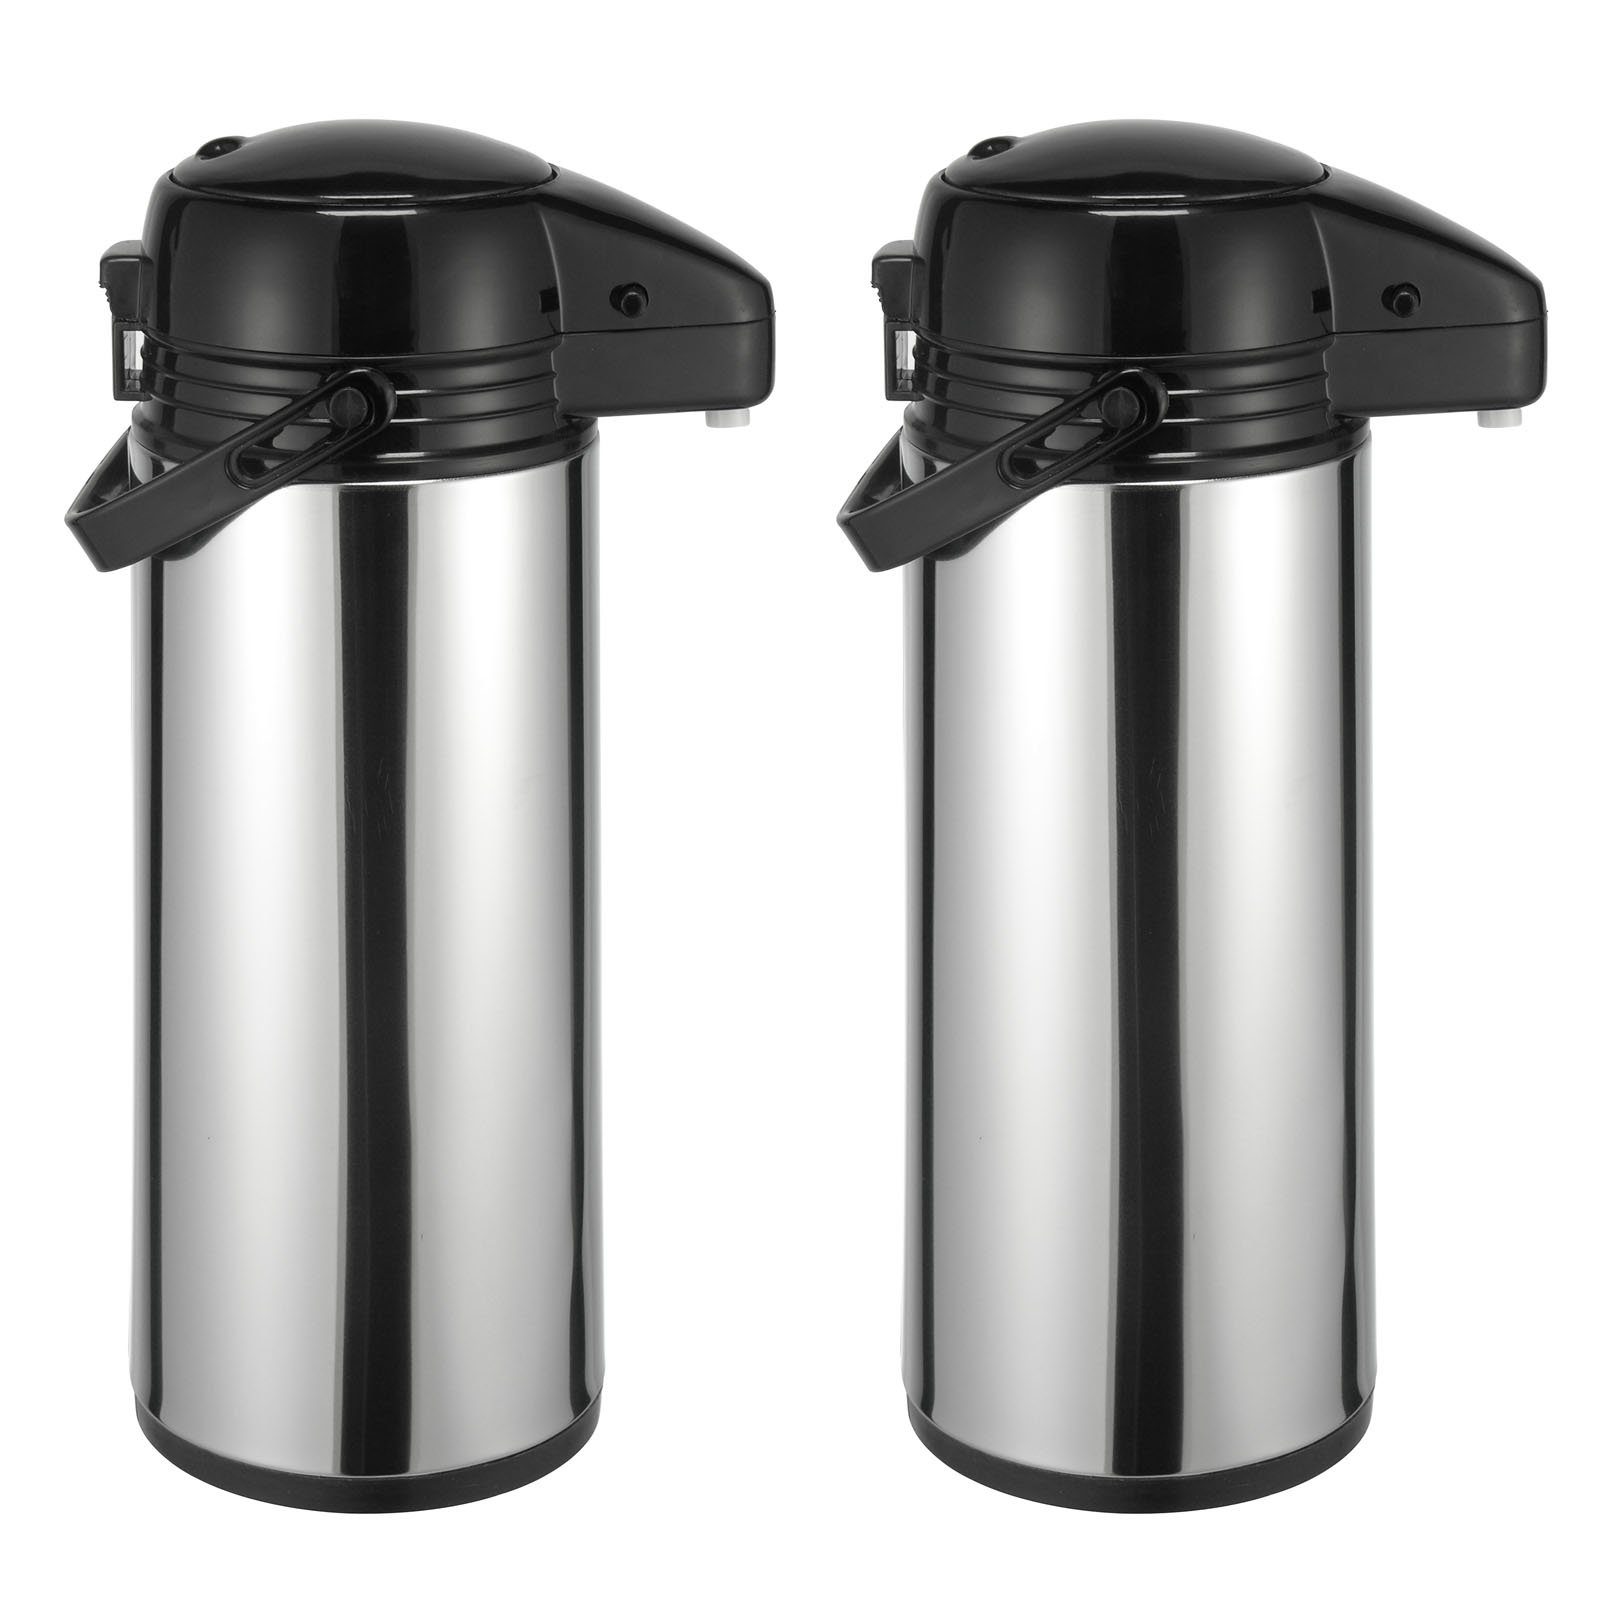 HAC24 Pump-Isolierkanne Thermoskanne Kaffeekanne Isolierkanne Teekanne Thermo Kaffee Tee Kanne Airpot Pumpkanne, 1,9 l, (2 Stück), Edelstahl, Mit Pumpmechanismus & Tragegriff | Isolierkannen